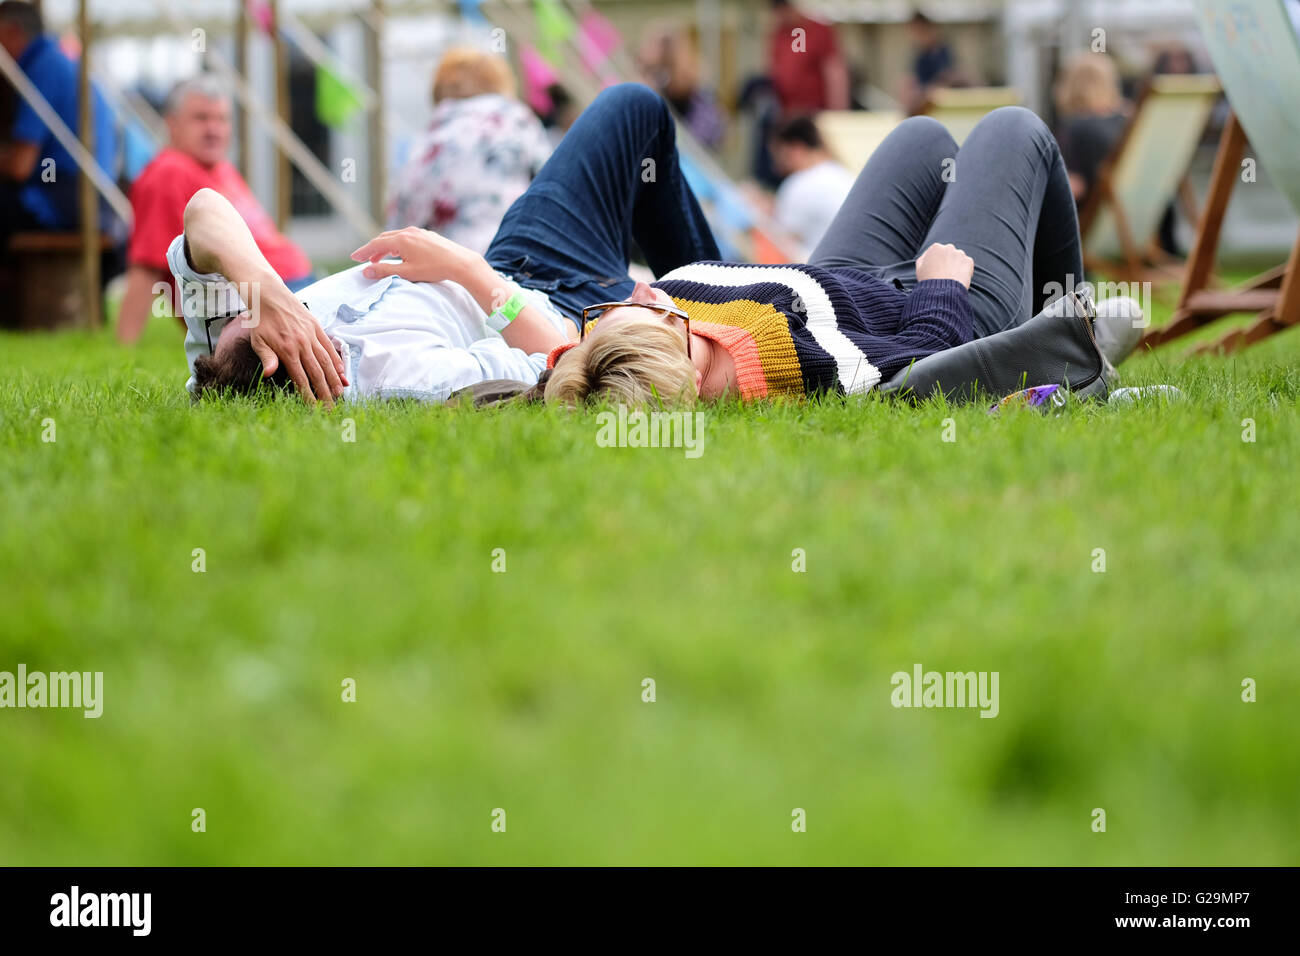 Hay on Wye, Wales, UK. 27. Mai 2016. Festival-Besucher genießen die Möglichkeit, legte sich auf dem Rasen und genießen Zeit zum Entspannen in der Nachmittagssonne am 2. Tag des diesjährigen Hay Festival.  Fotografieren Sie Steven Mai / Alamy Live News Stockfoto